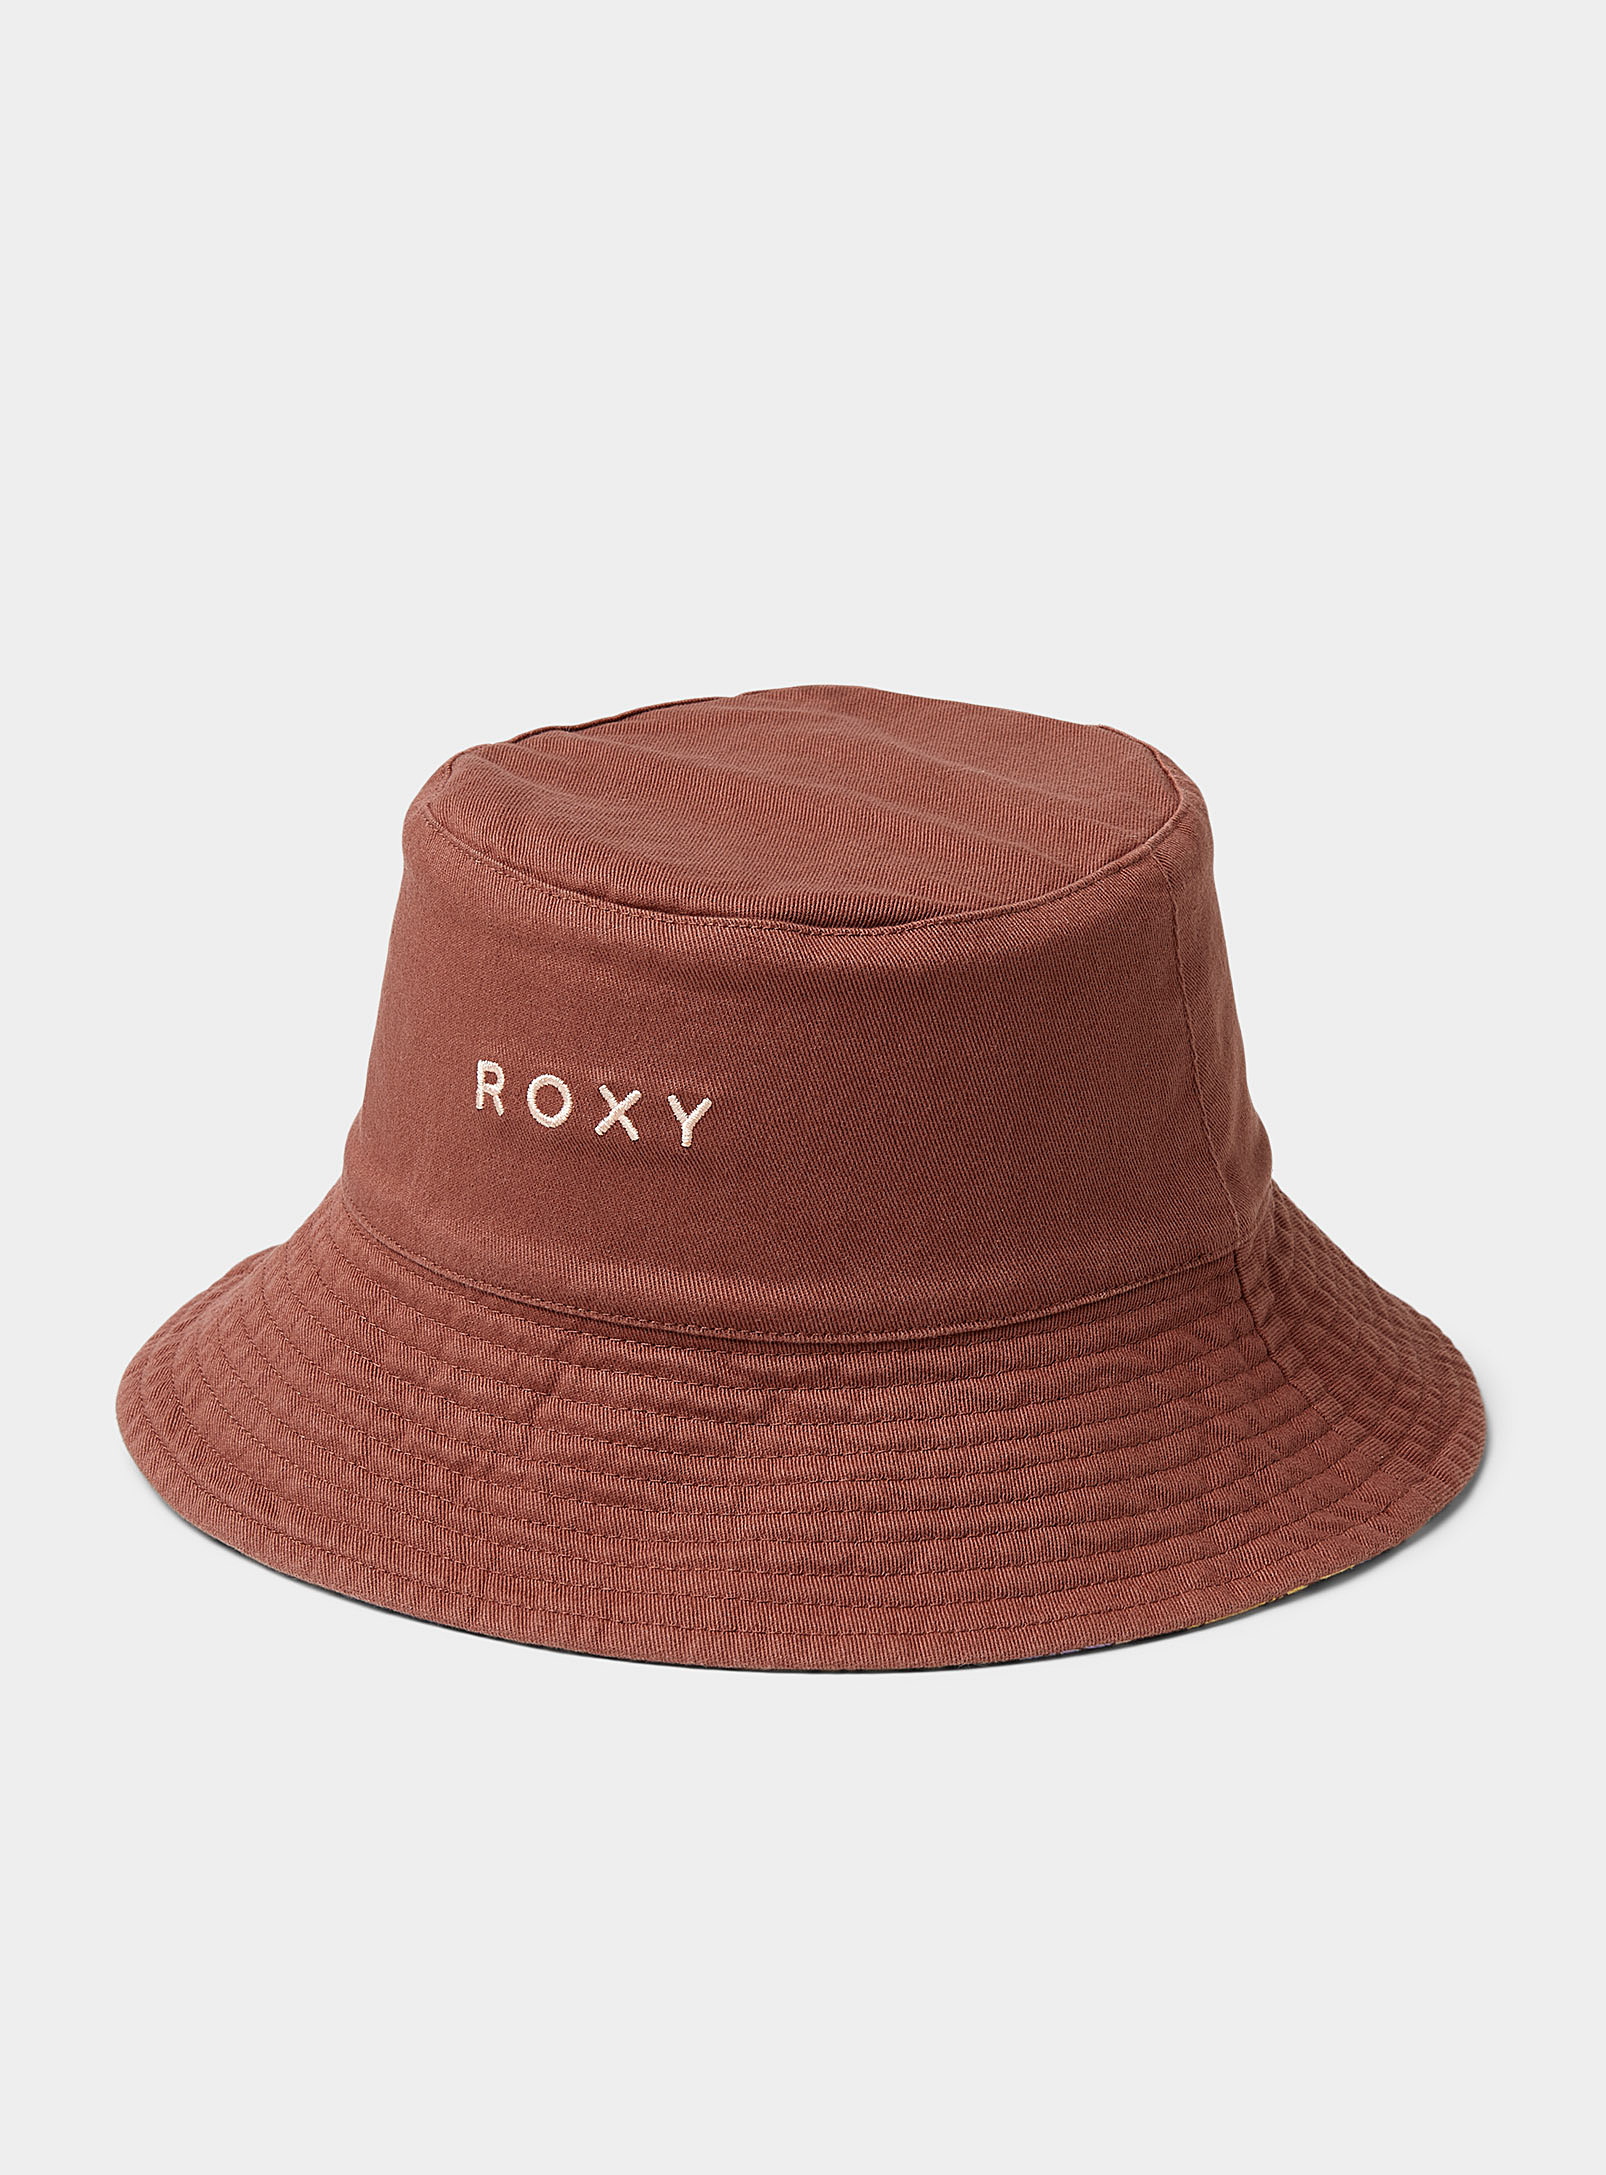 Roxy - Chapeau Le Bob réversible fleurs estivales